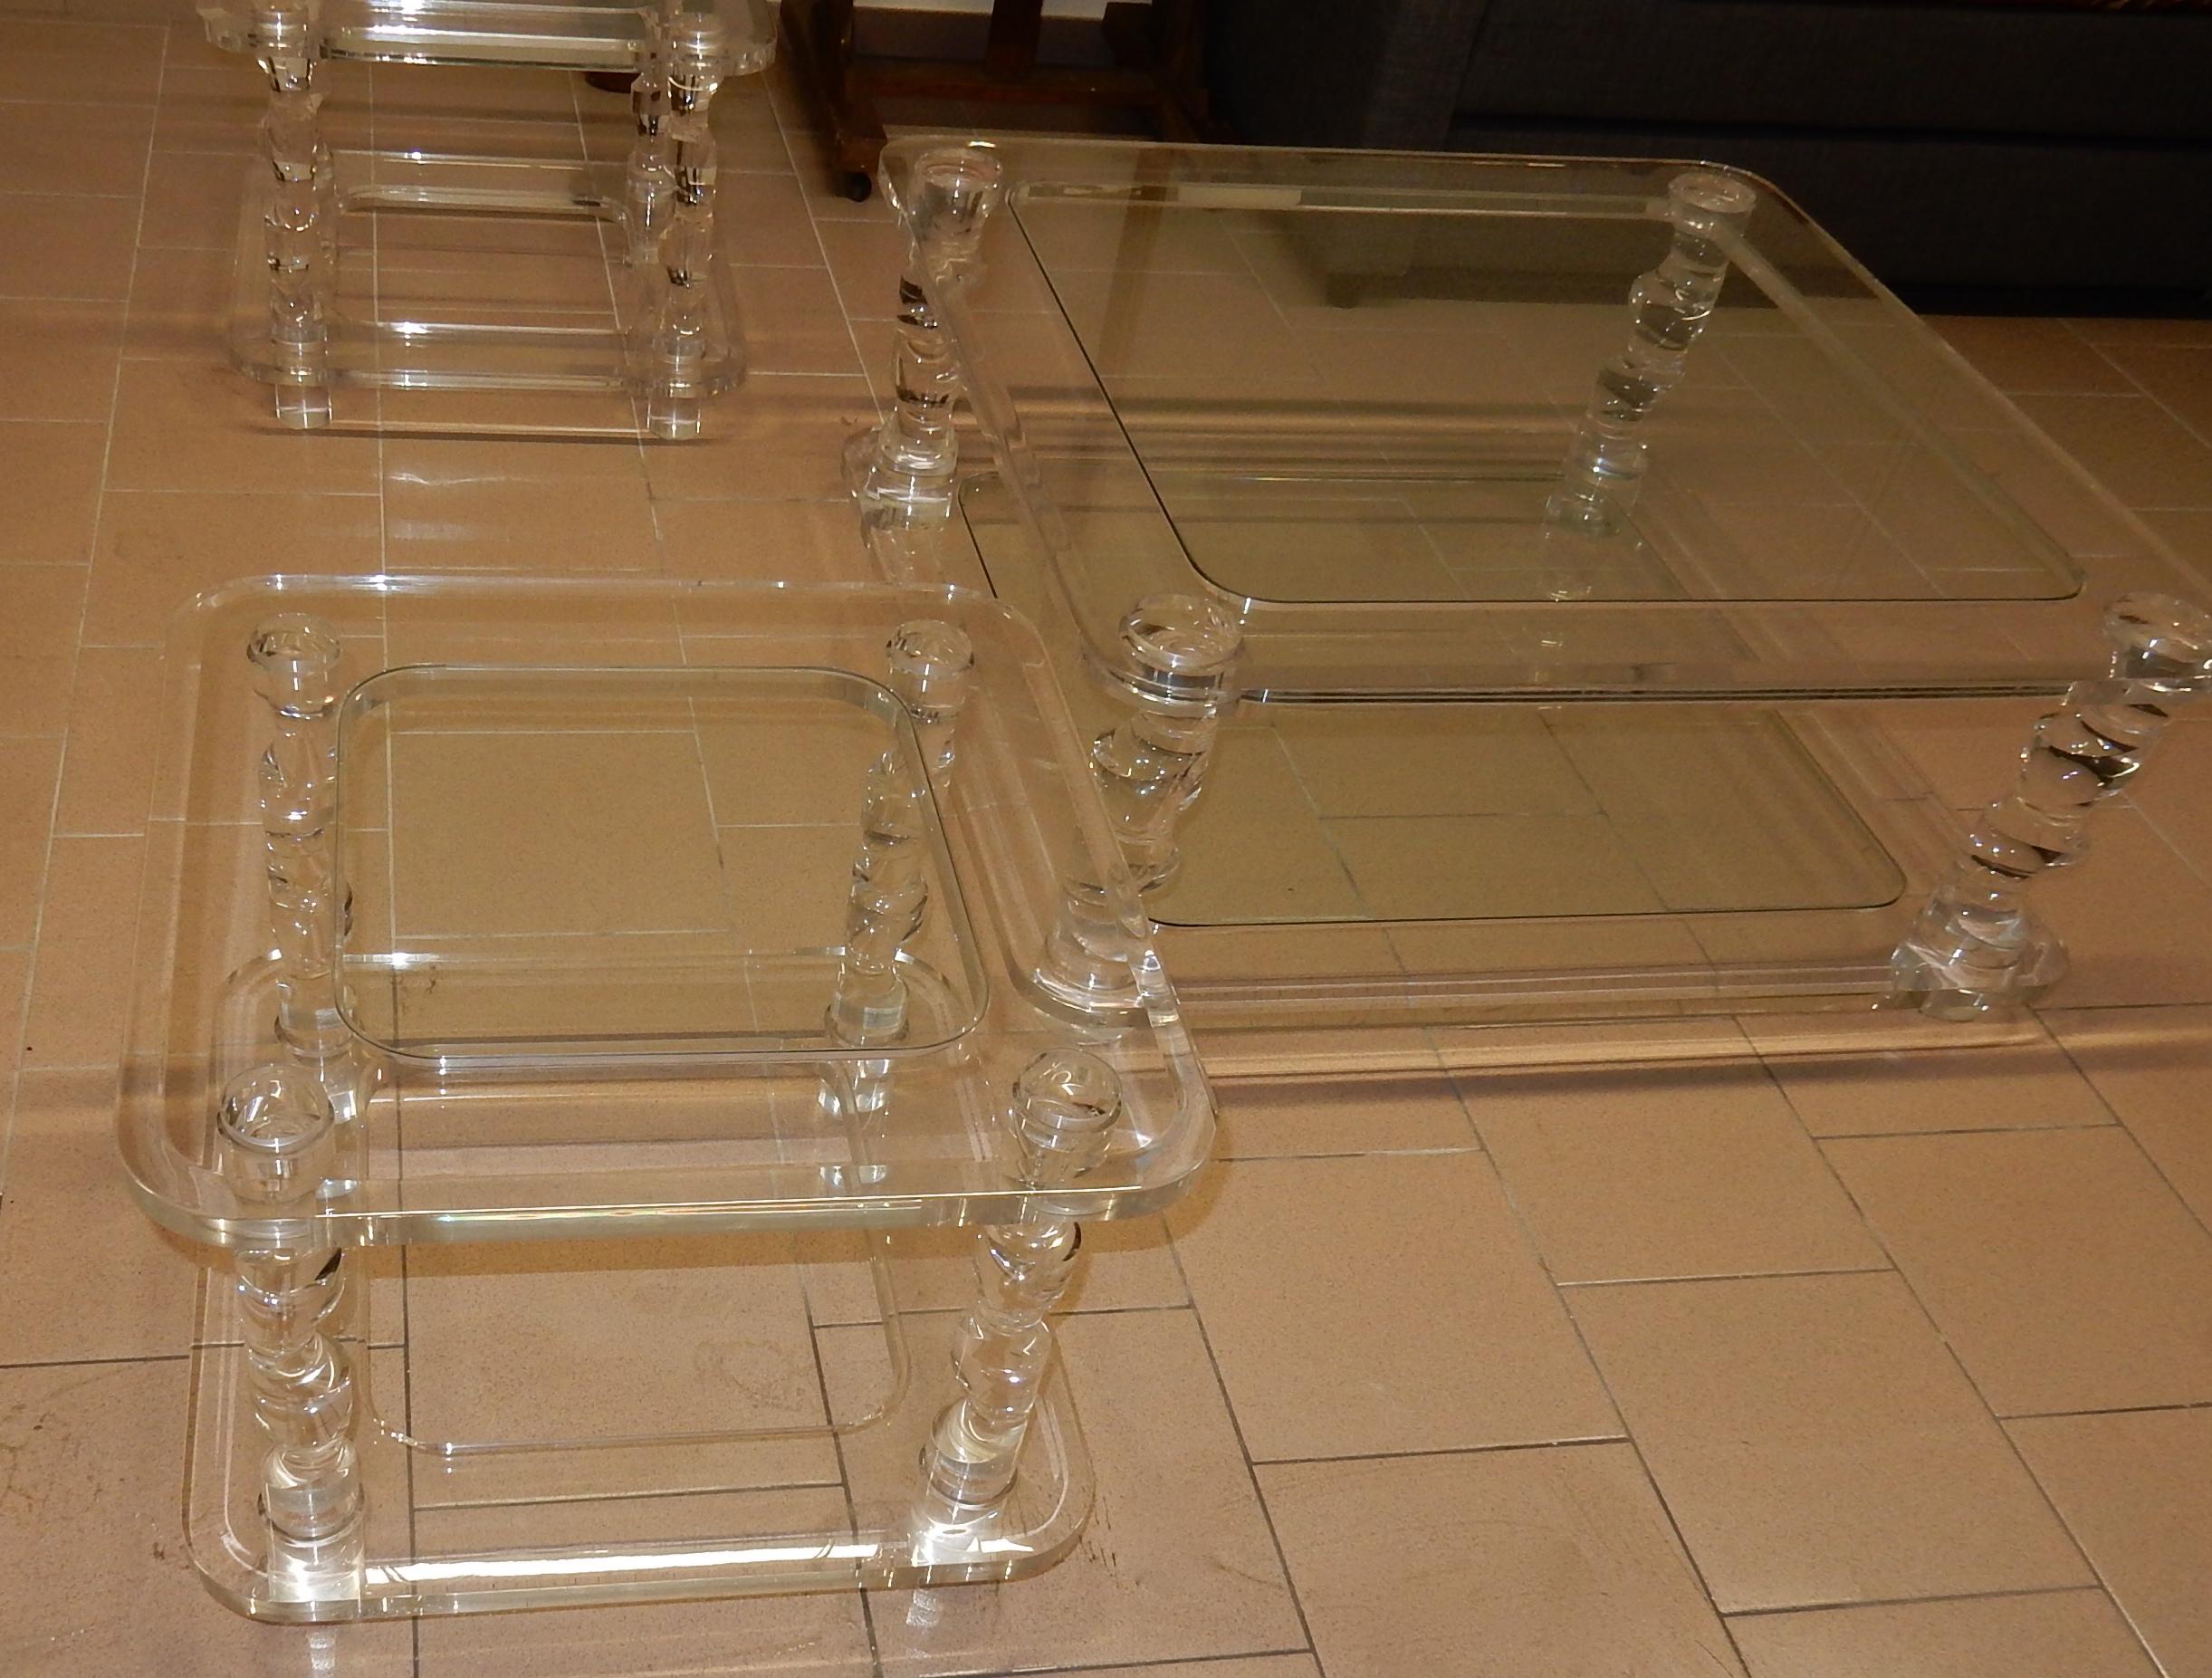 Couchtisch in Lucite , 2 Glasschalen, der Rahmen des Tisches ist abgeschrägt, Beträge rufen eine embiellage zurück oder man zieht Kork, völlig niedergeschlagen, + 2 Enden von Sofa Gleiches Modell circa auf 1970, Herstellung für Roméo, Größe von